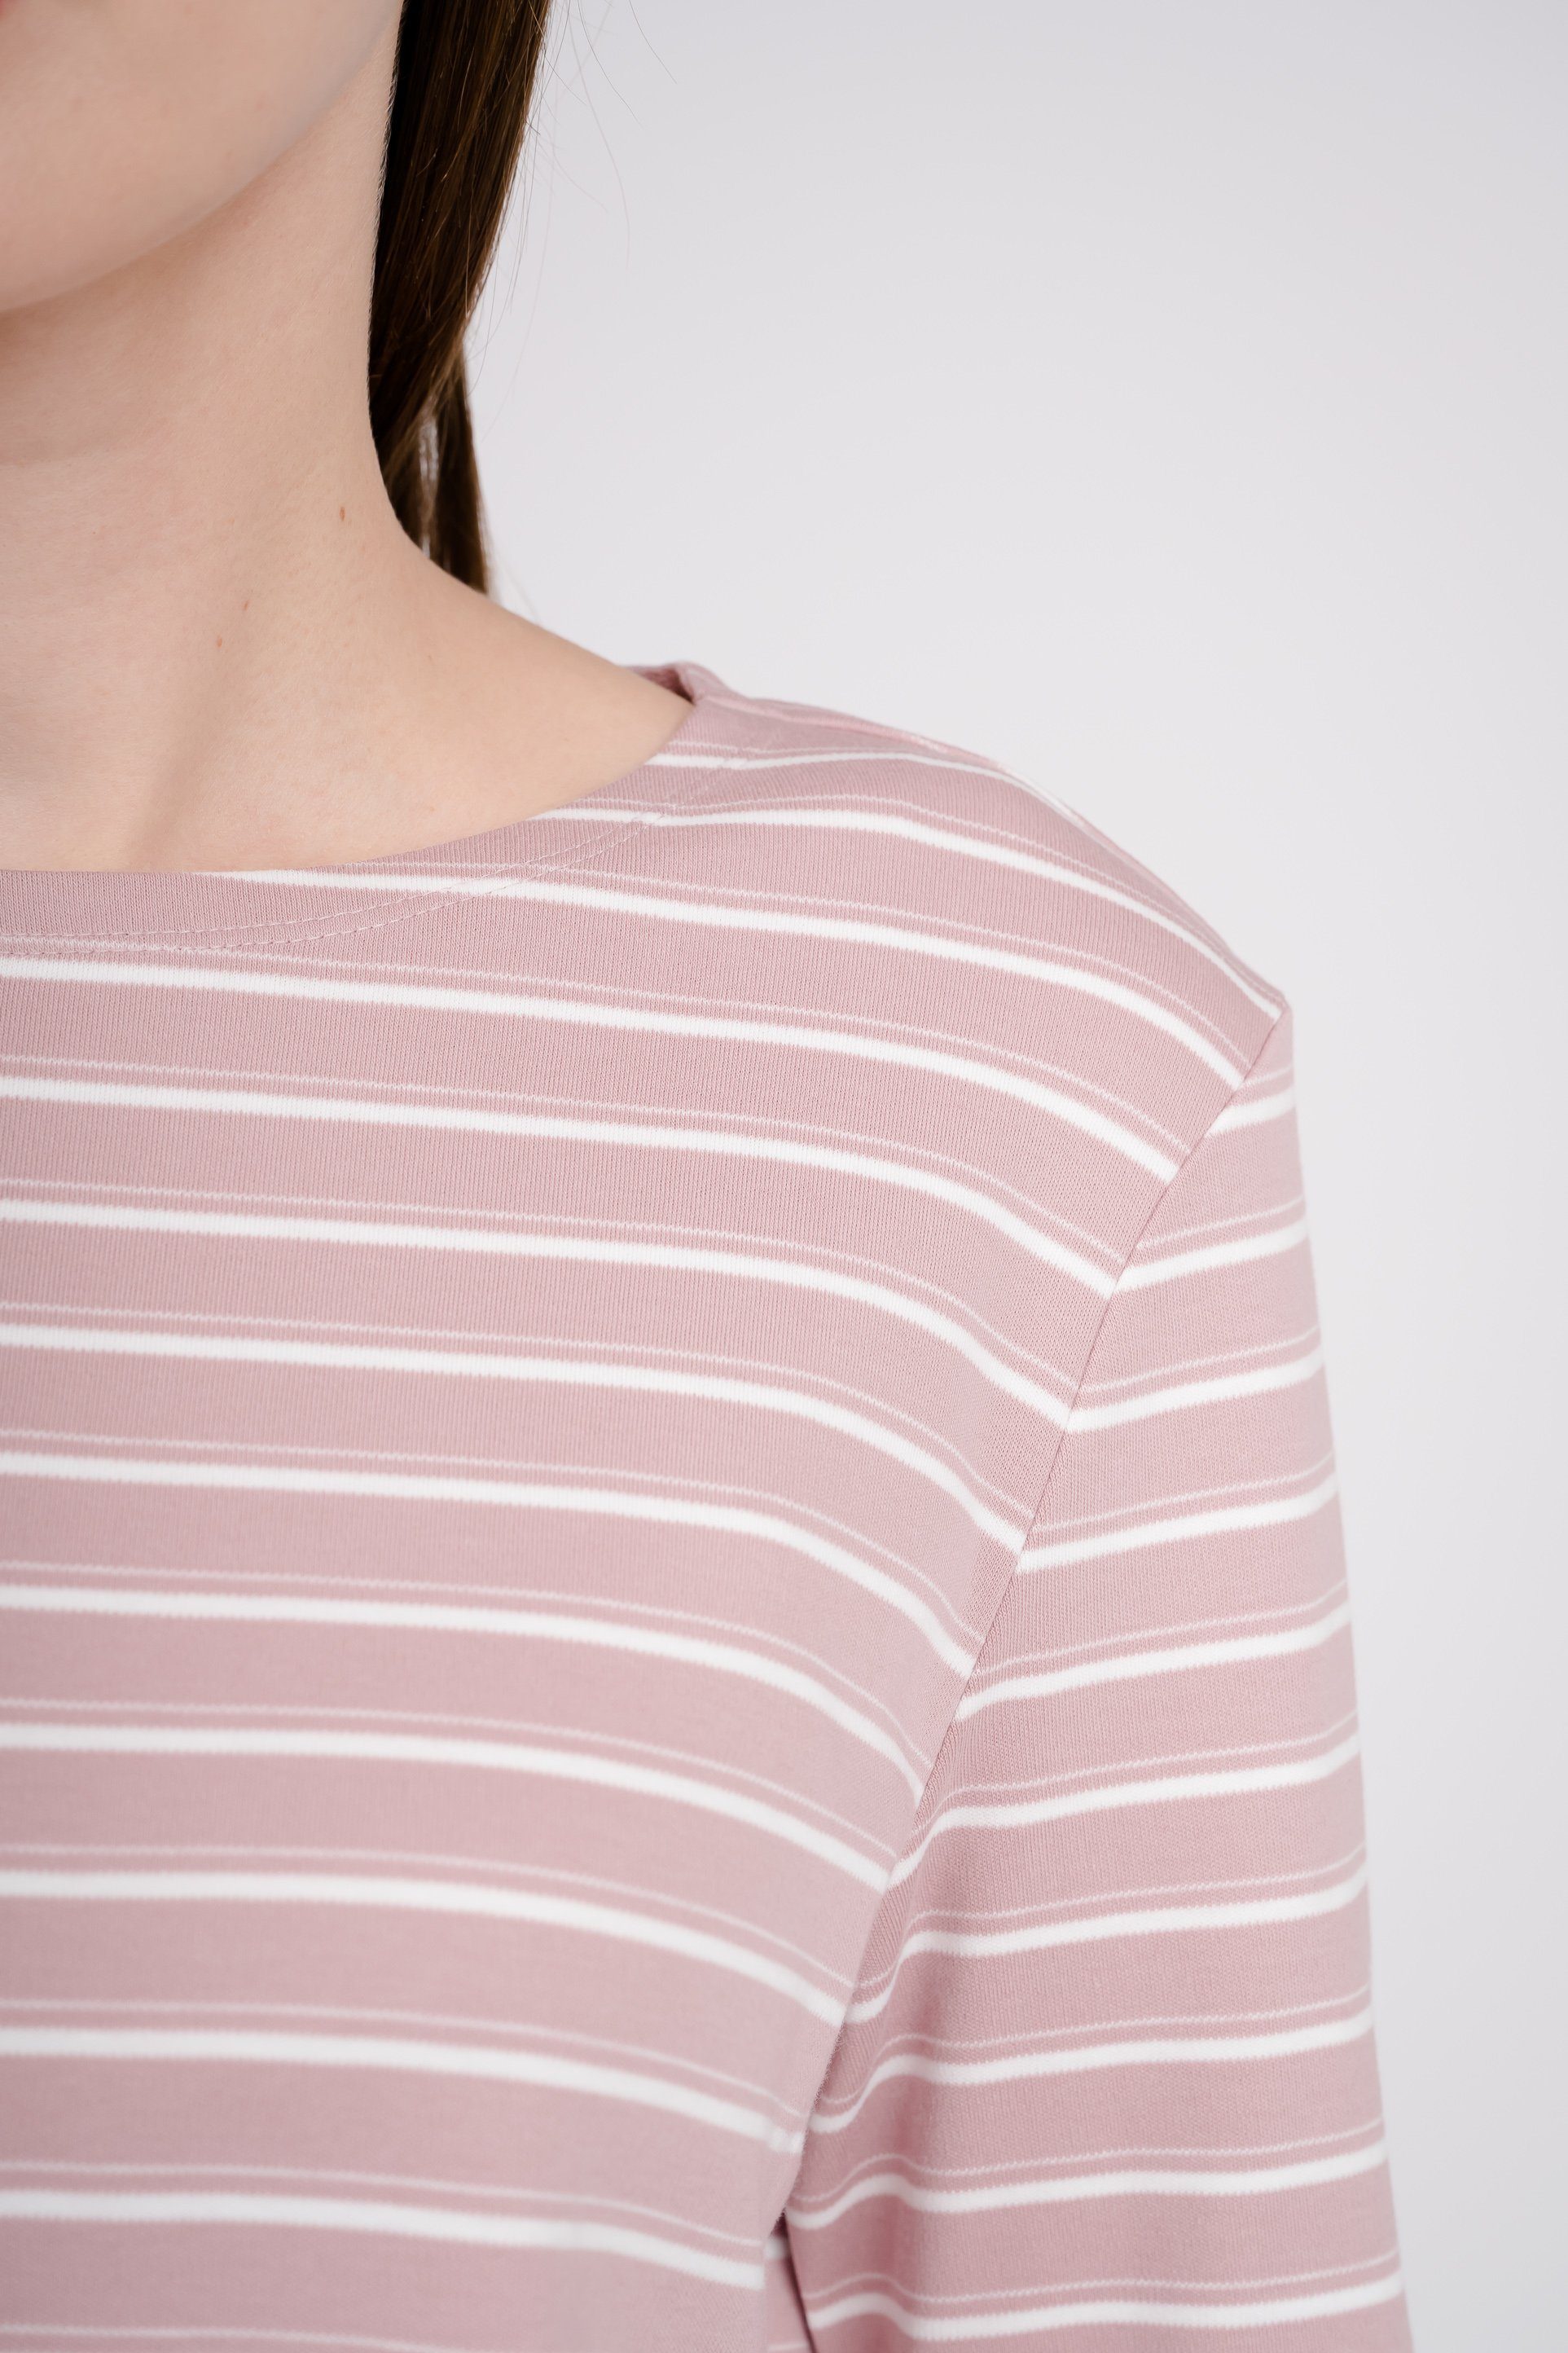 GIORDANO Langarmshirt in tollem Streifen-Design pink-weiß